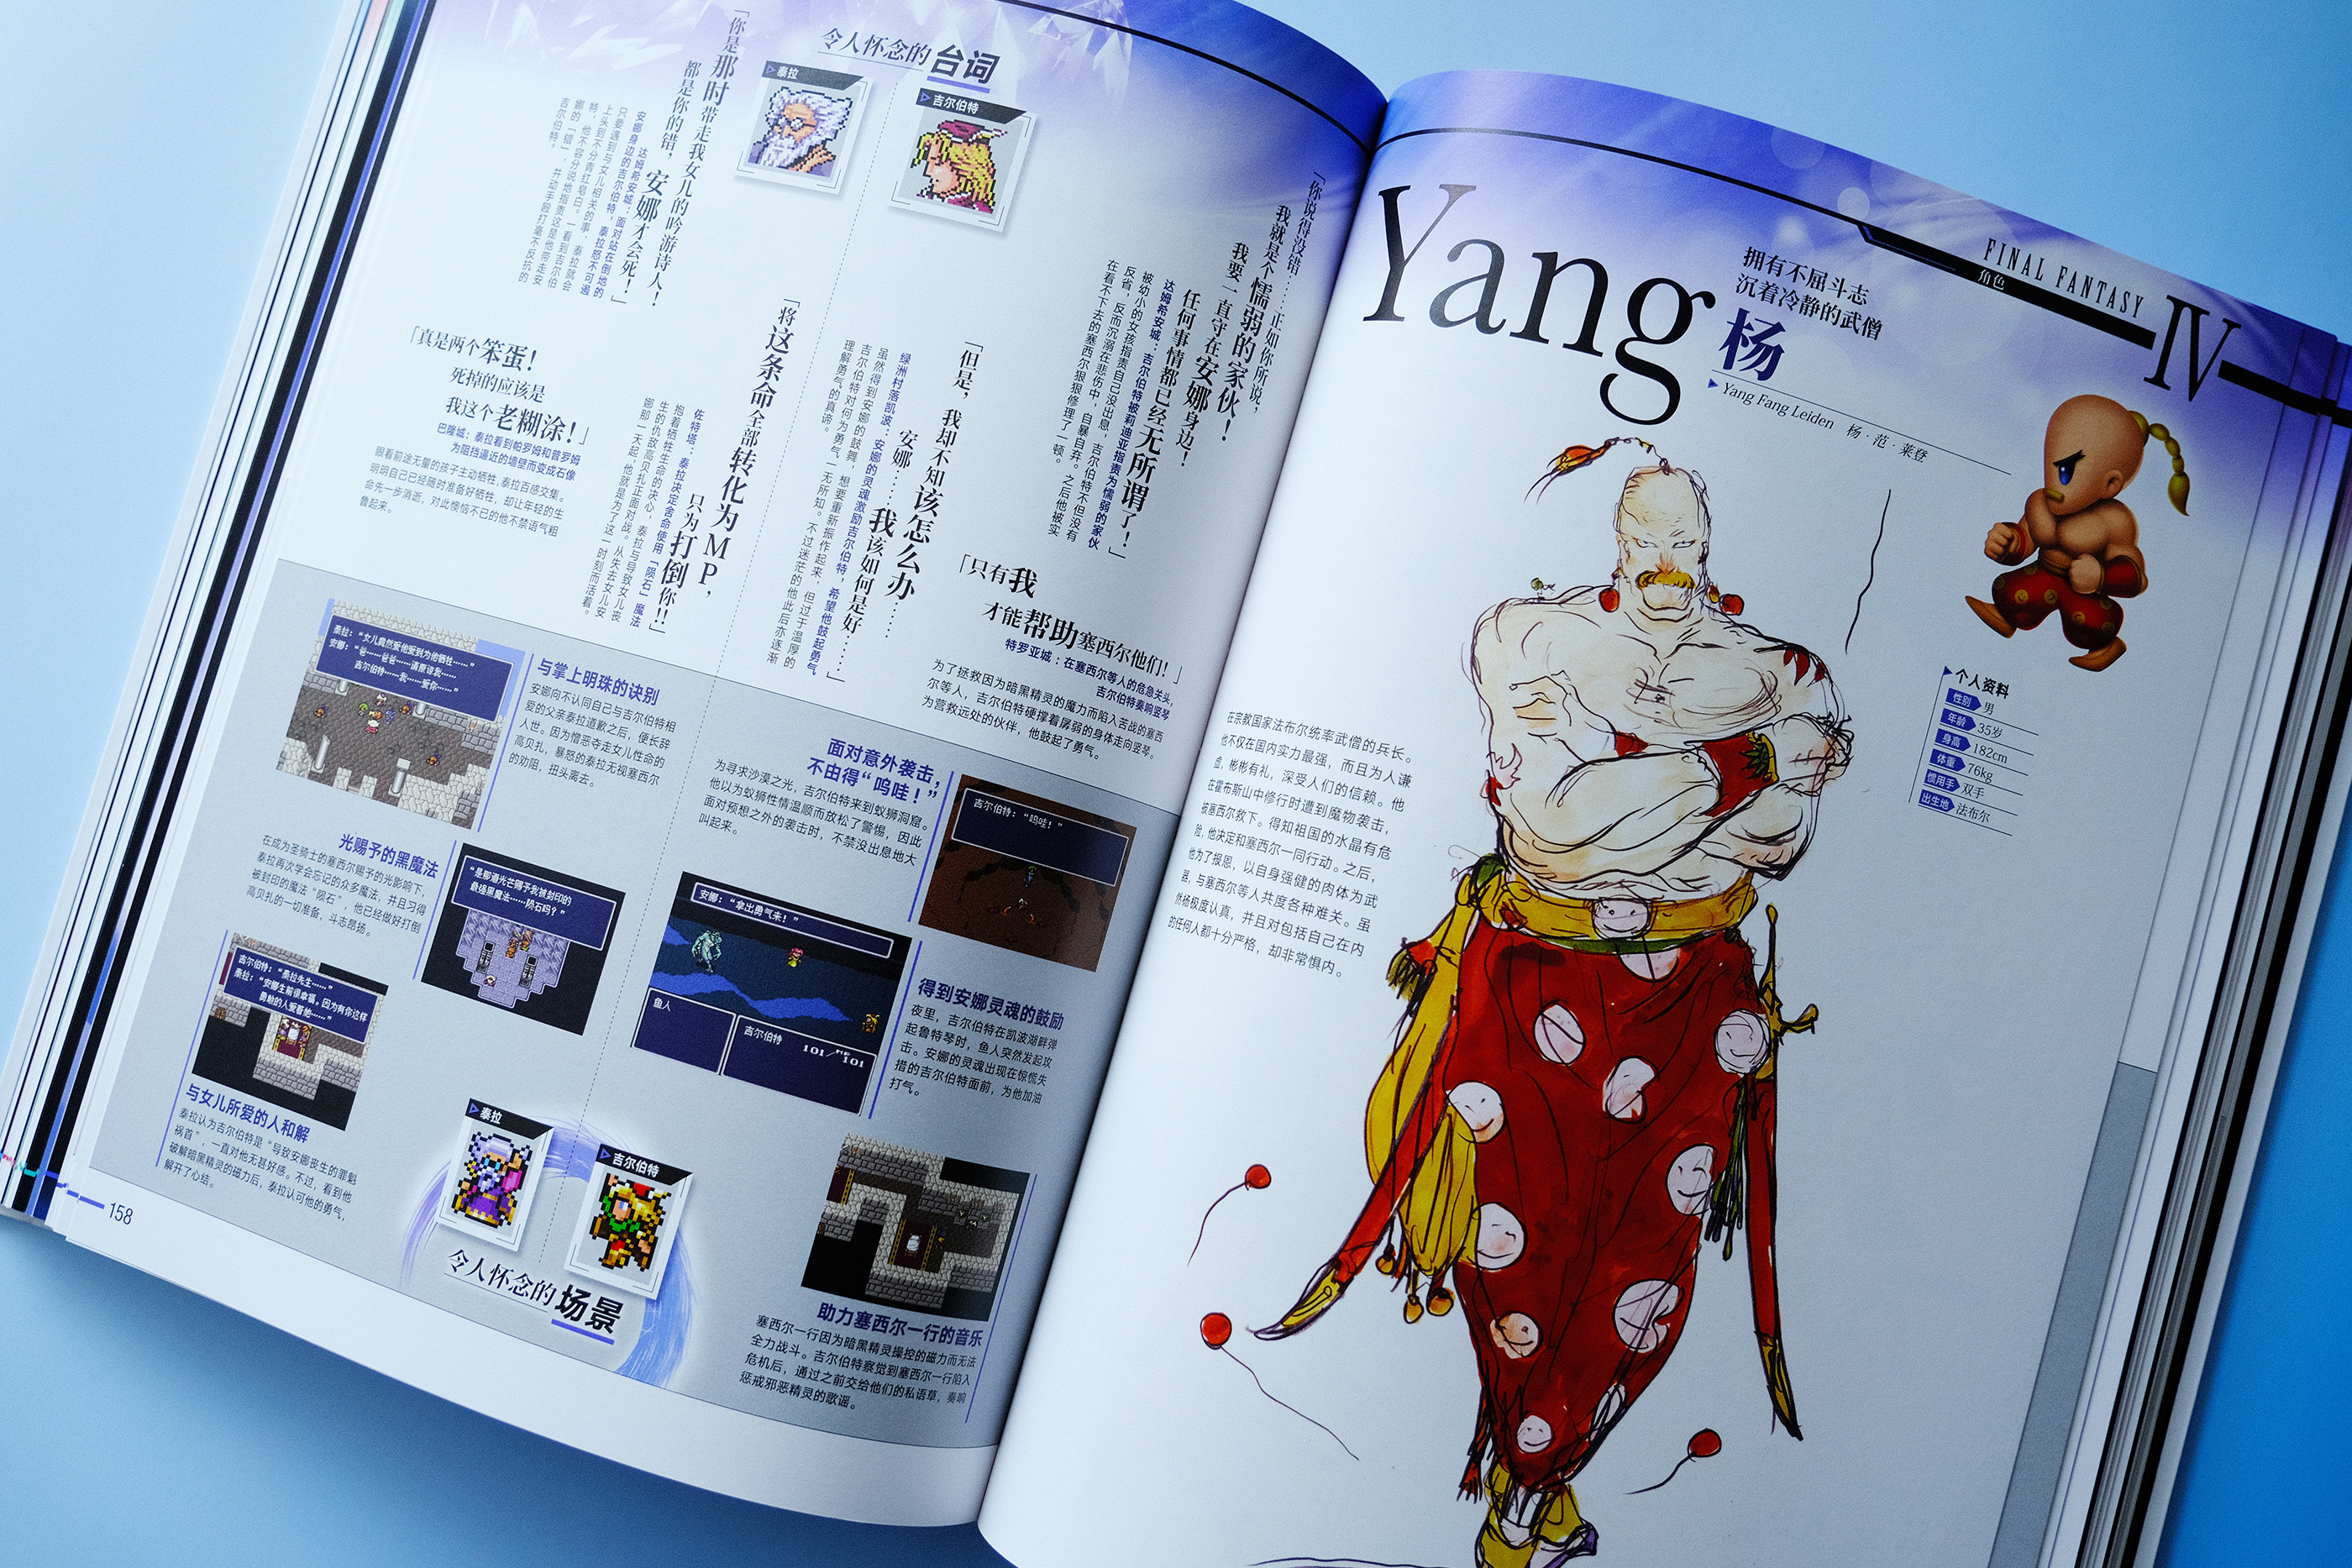 《最终幻想IV》的杨的履历、泰拉和吉尔伯特的名台词与名场面